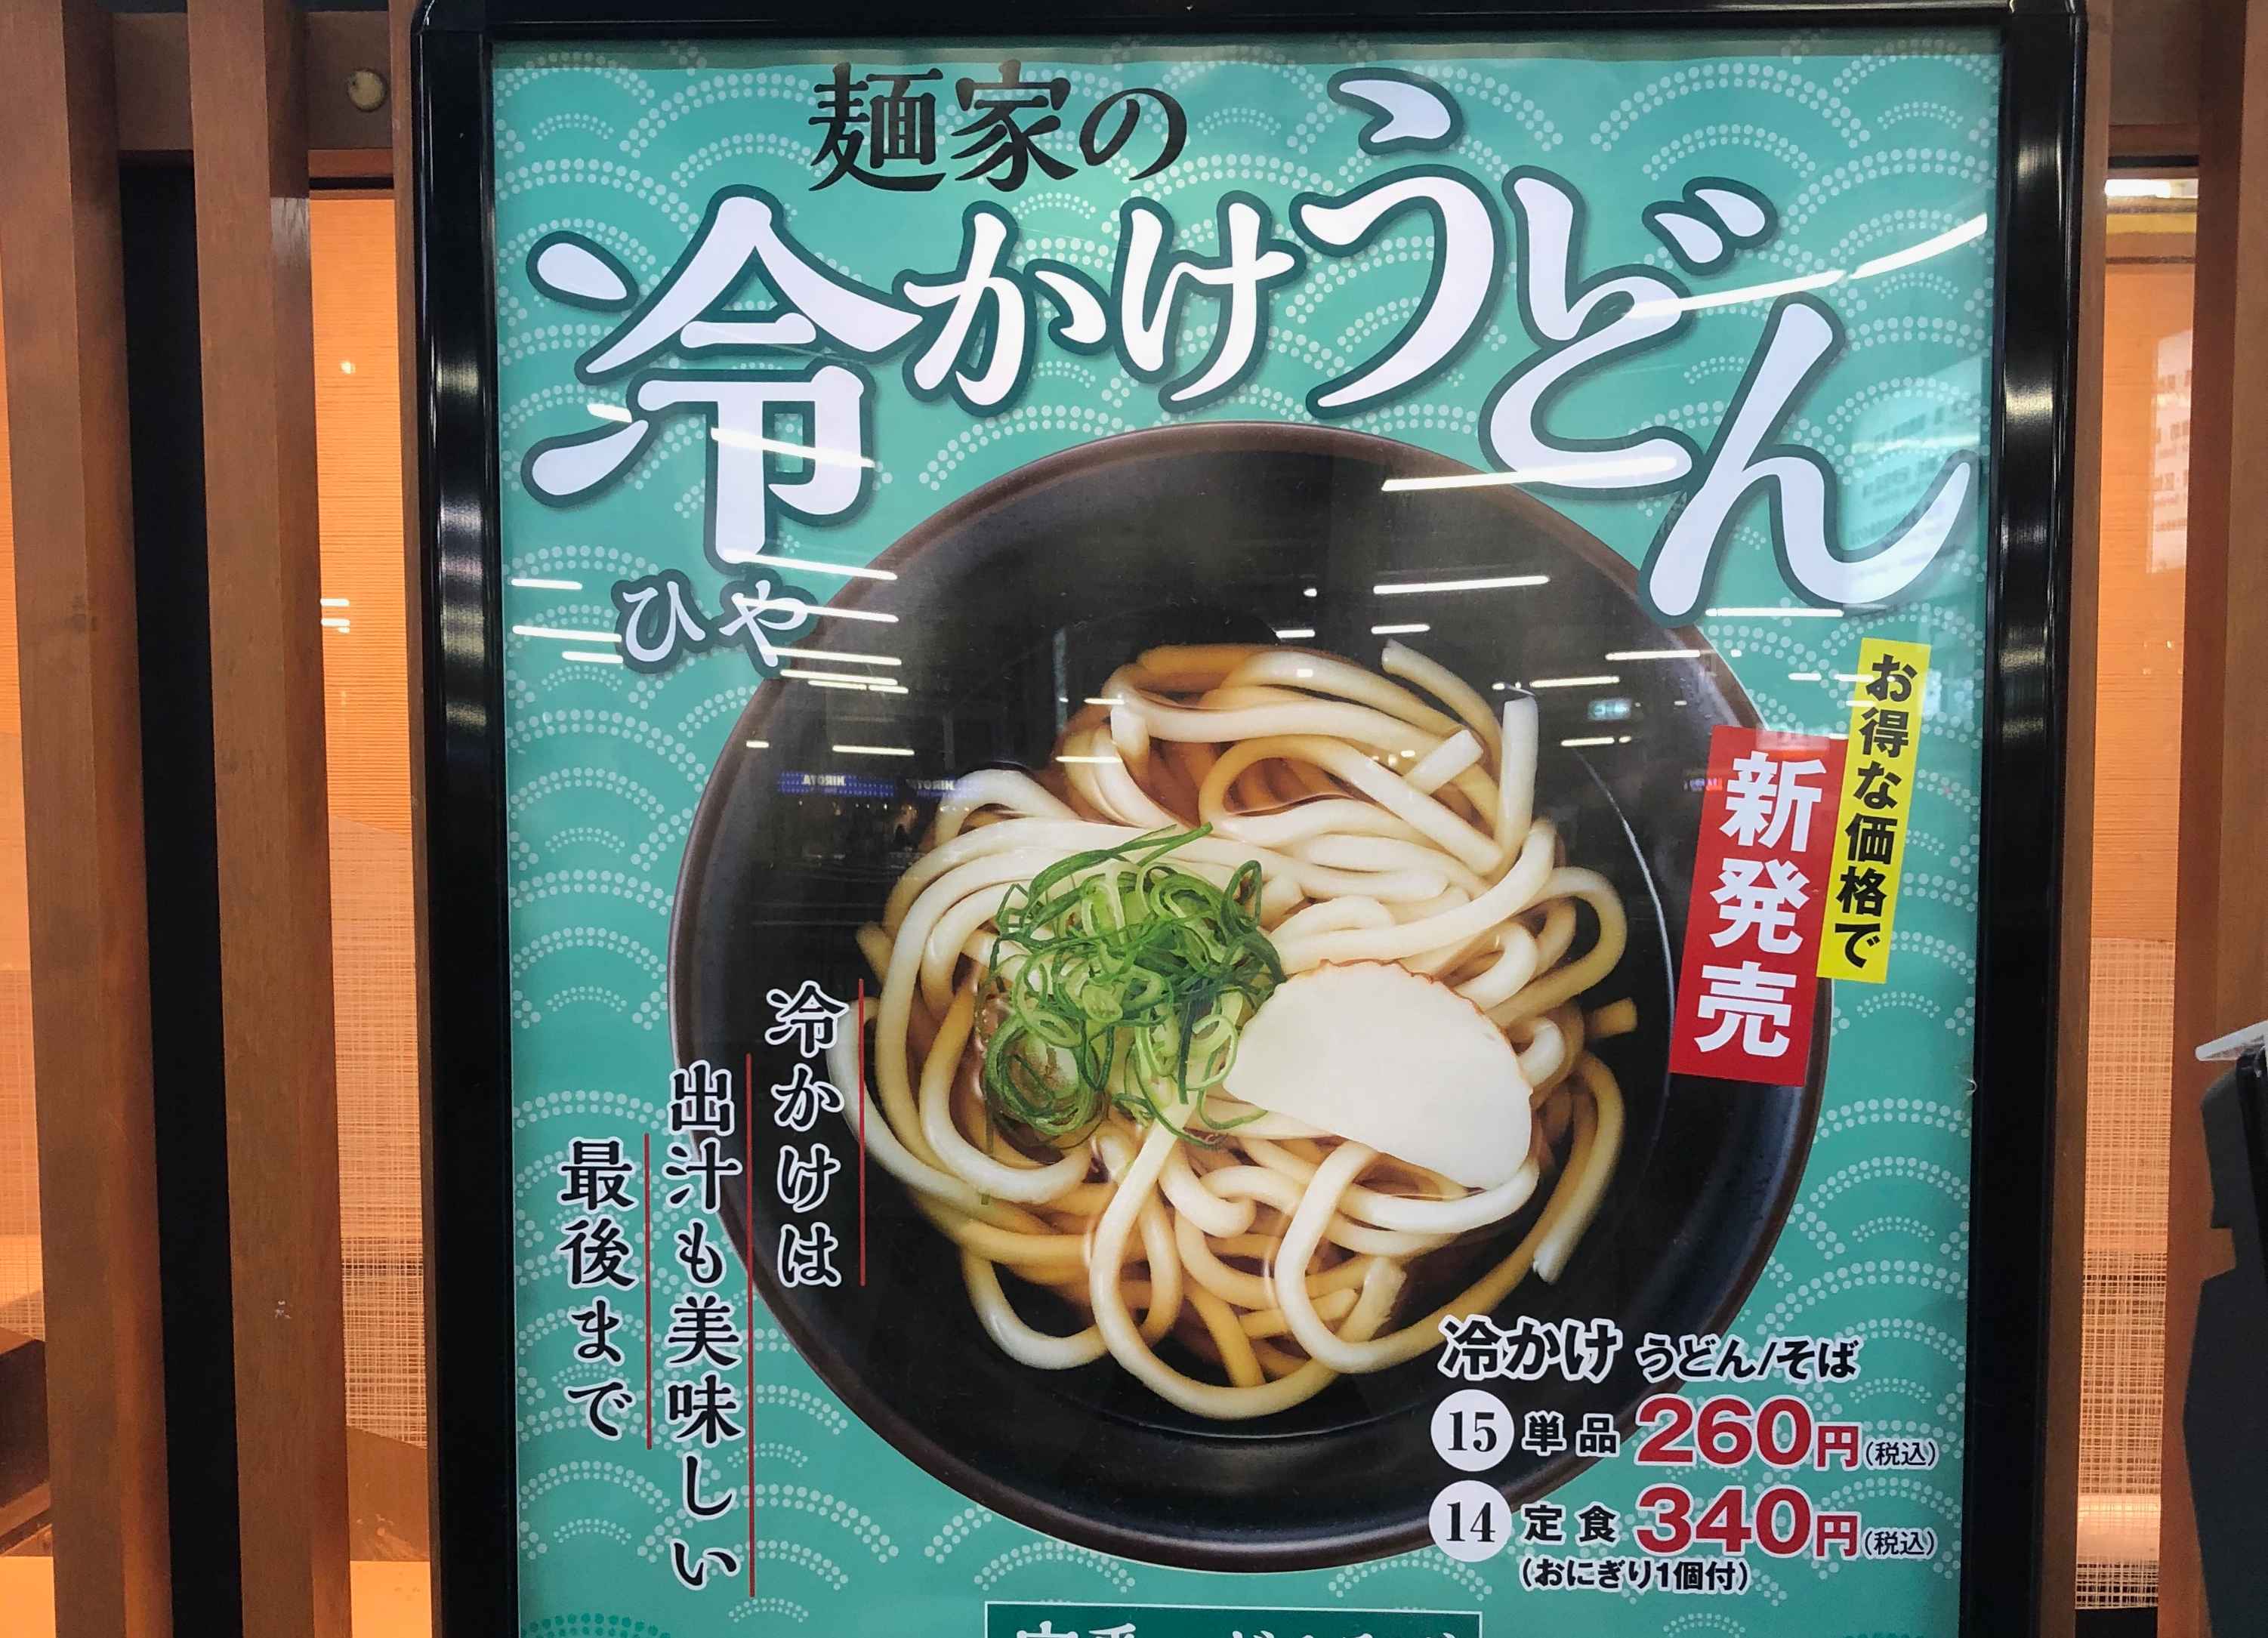 大阪環状線の駅構内で食べられる 麺屋 で19年夏メニューが登場